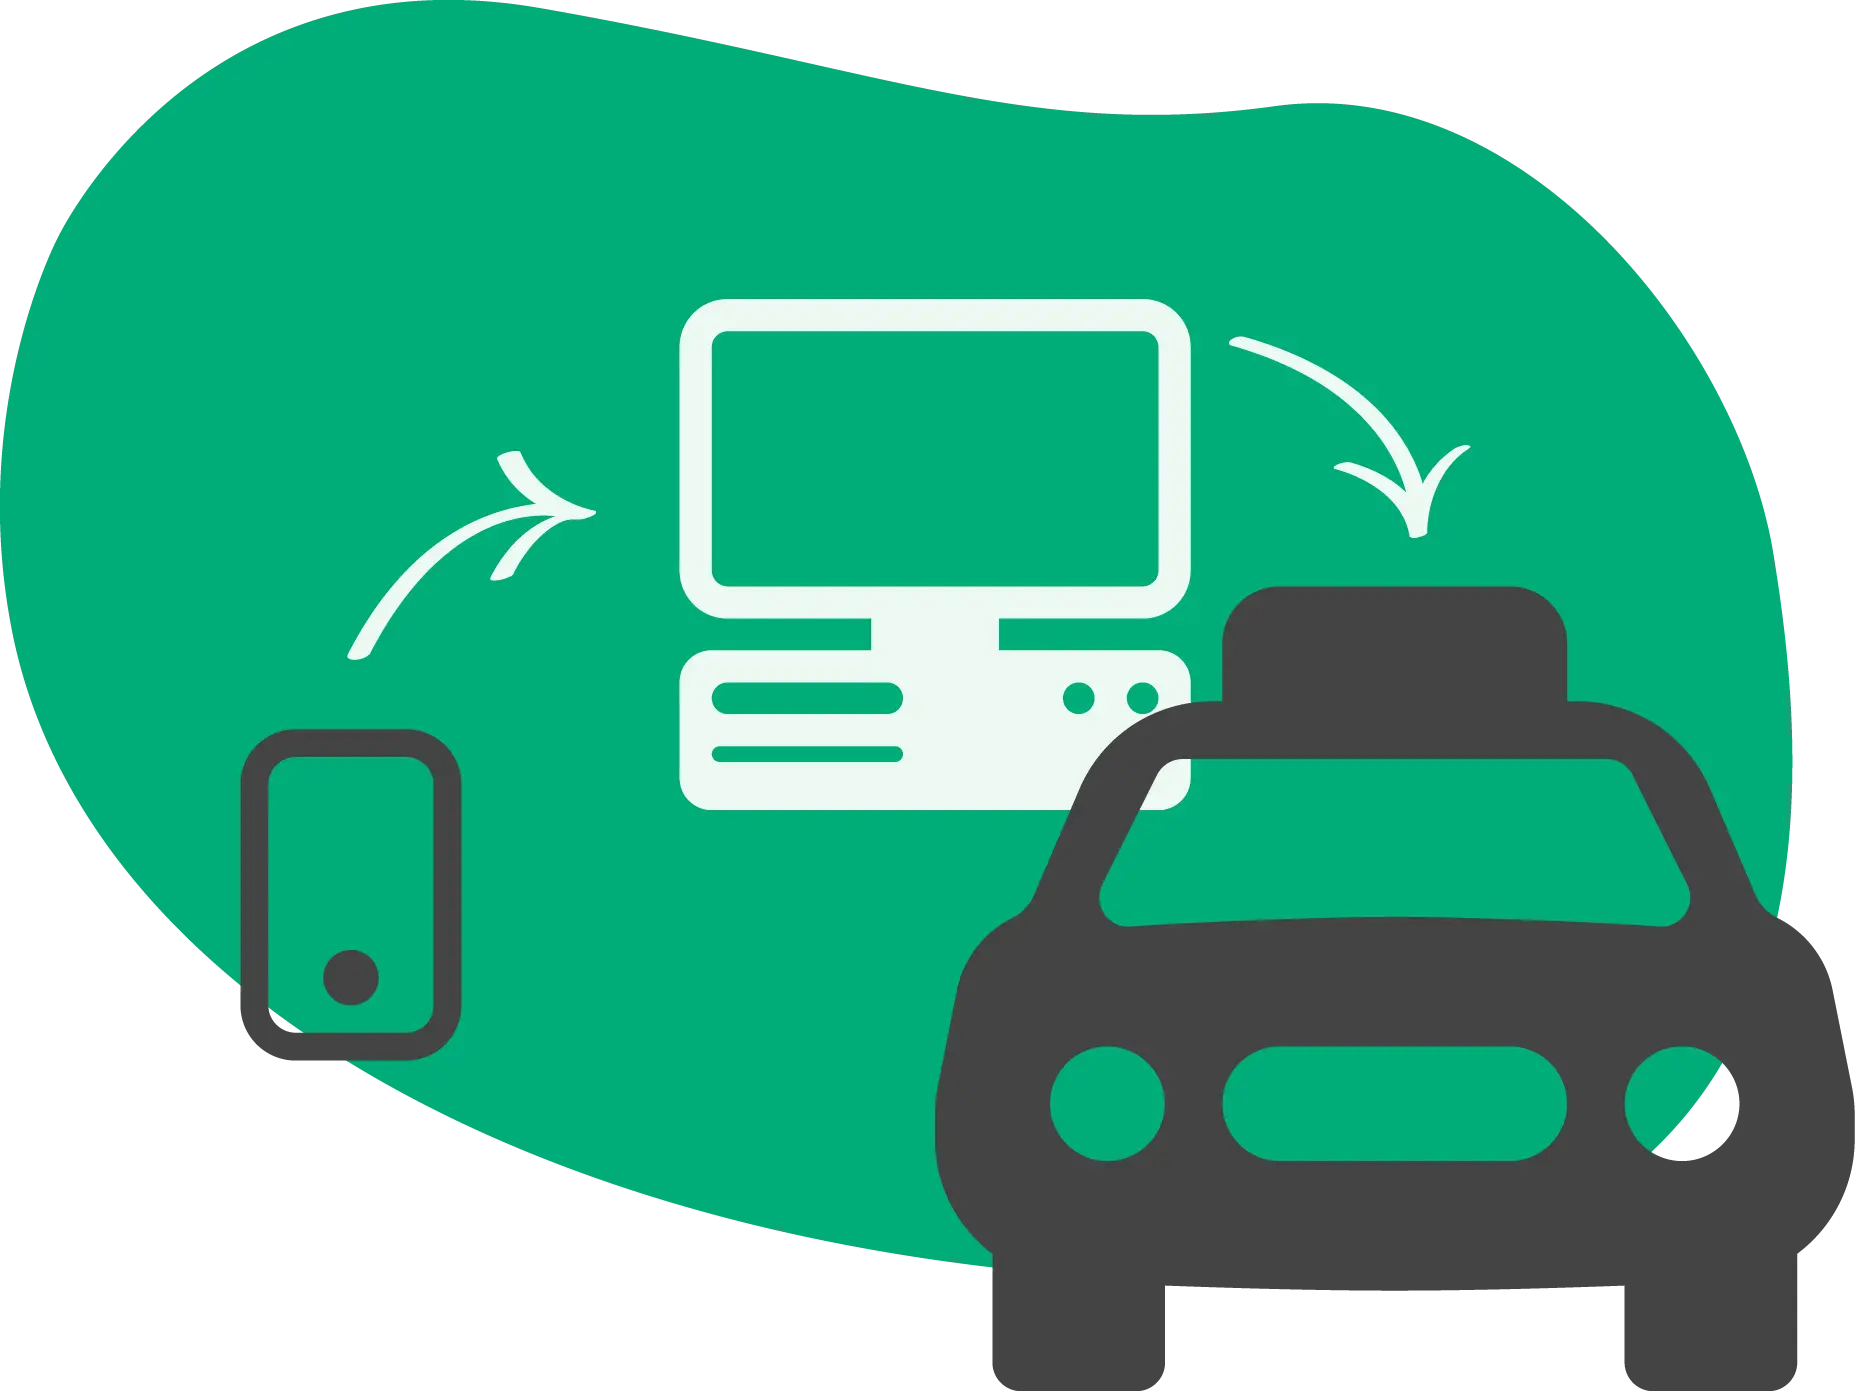 Ikona taksówki, komputera oraz telefonu, pokazująca integrację pomiędzy urządzeniami a pojazdem.